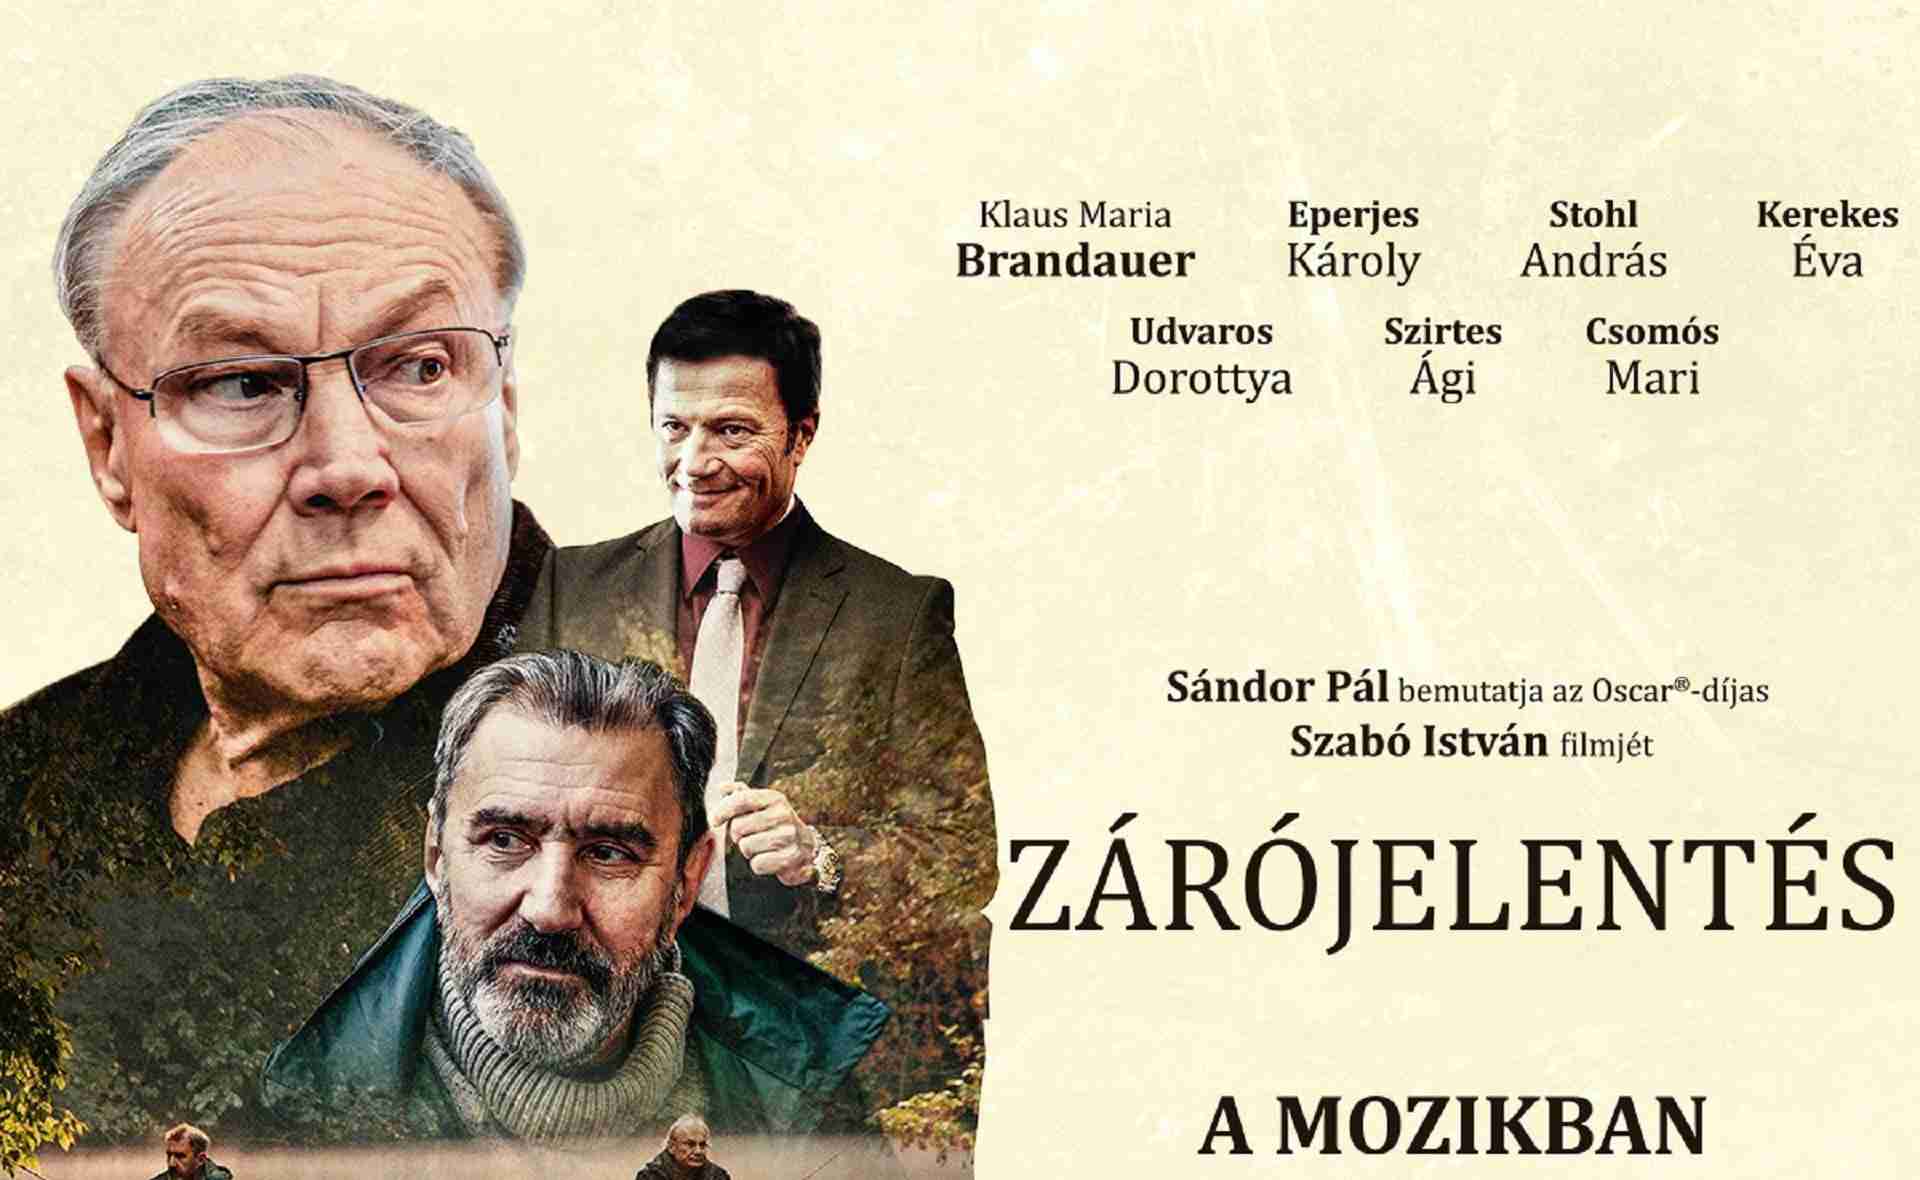 Rapport final (Zárójelentés) d'István Szabó - Projection du film